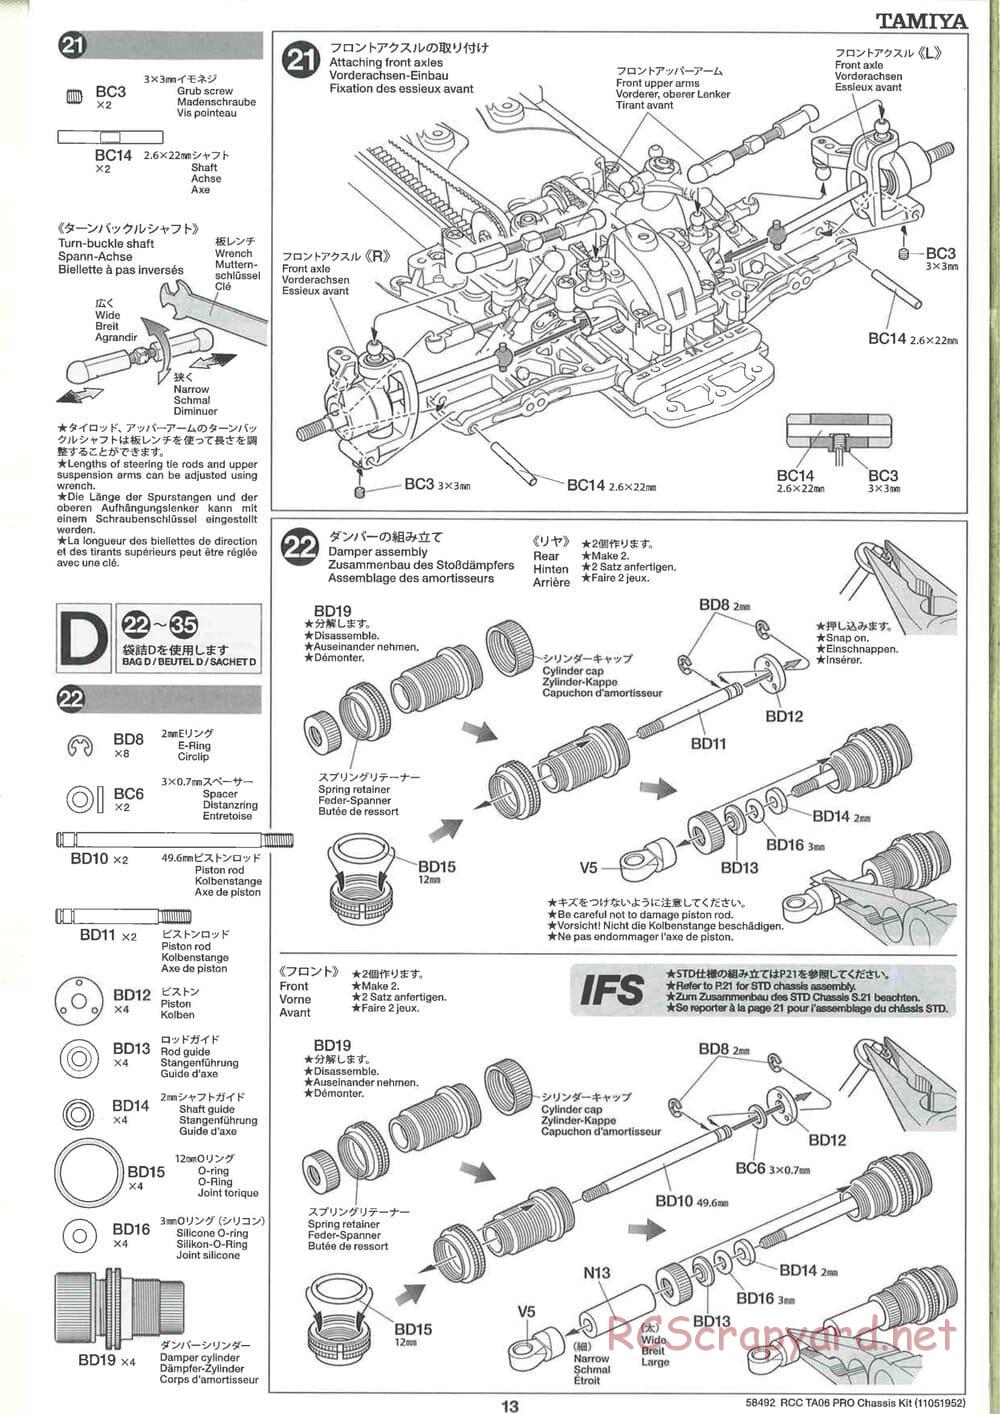 Tamiya - TA06 Pro Chassis - Manual - Page 13